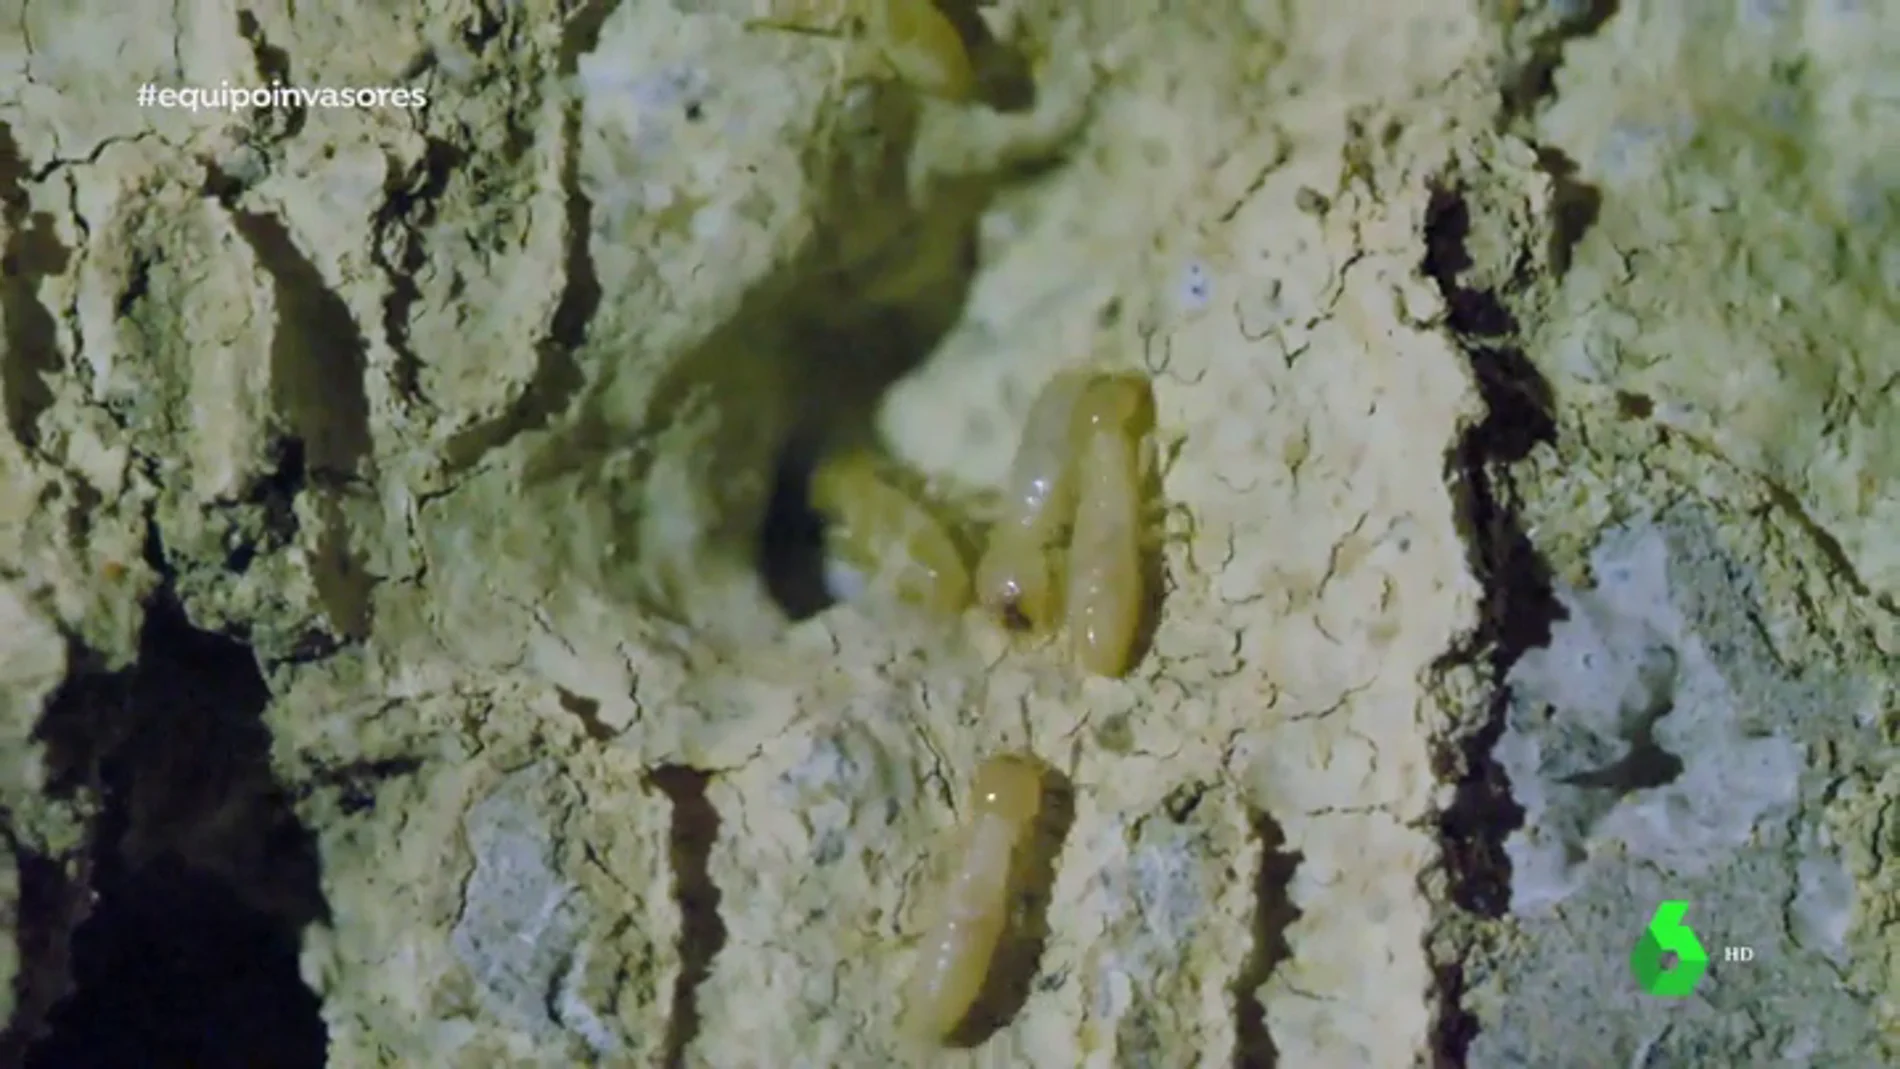 Más de 10.000 huevos diarios y 120 casas afectadas: los vecinos de Tacoronte conviven con las termitas invasoras